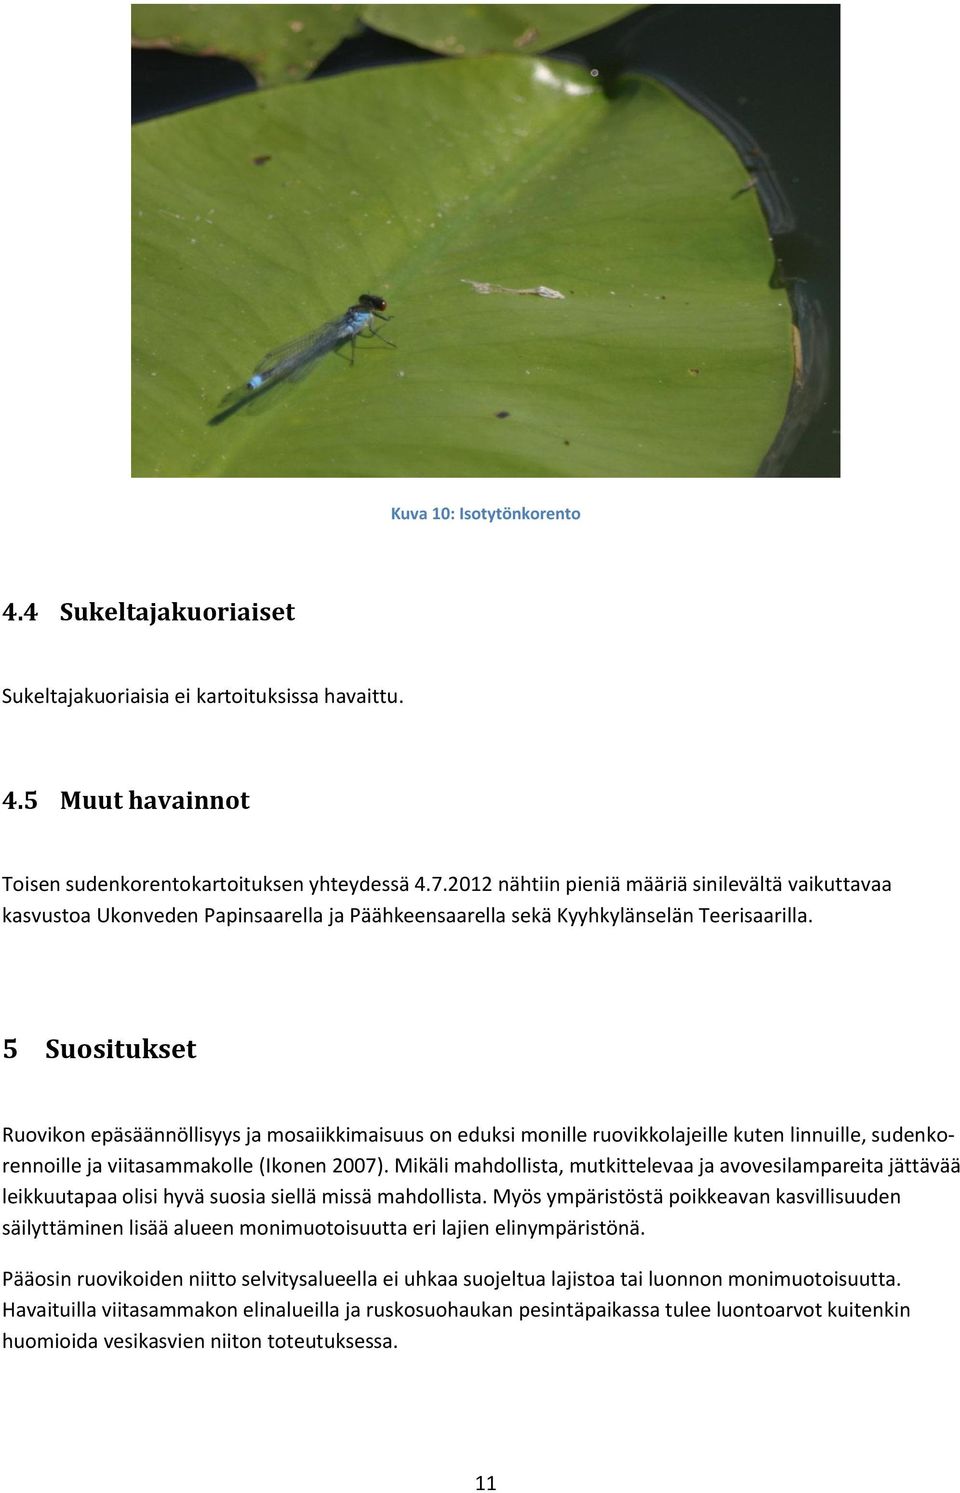 5 Suositukset Ruovikon epäsäännöllisyys ja mosaiikkimaisuus on eduksi monille ruovikkolajeille kuten linnuille, sudenkorennoille ja viitasammakolle (Ikonen 2007).